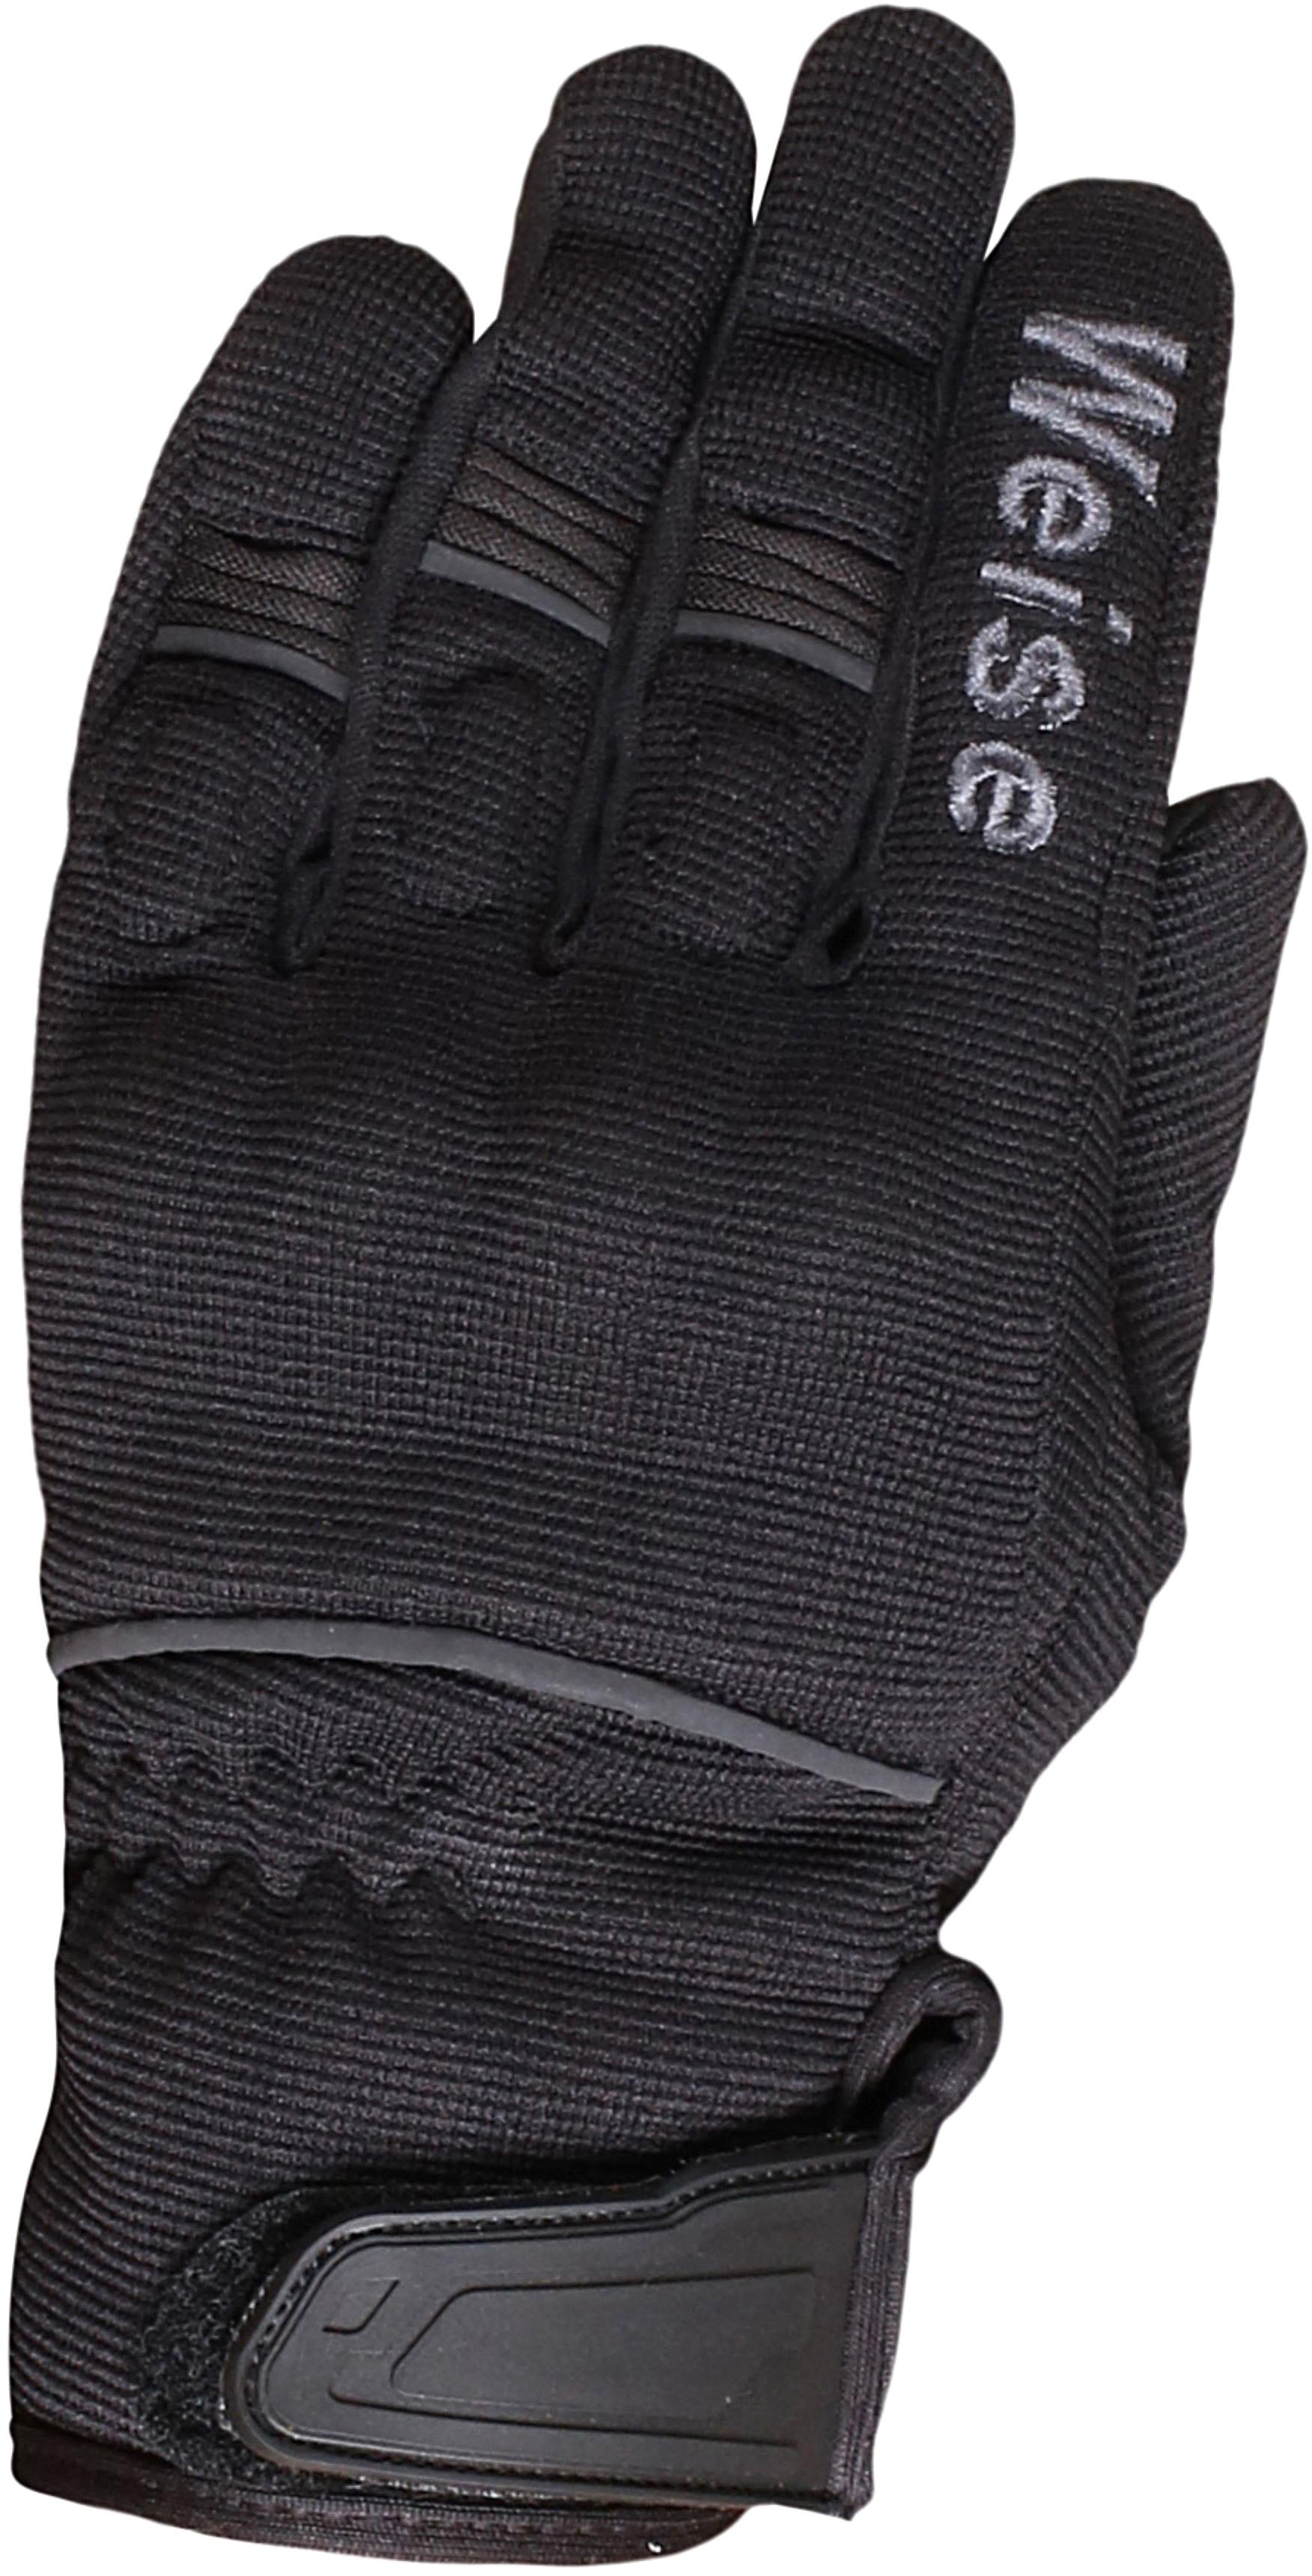 Weise Motorcycle Pit Gloves - Black/Gunmetal, 3Xl